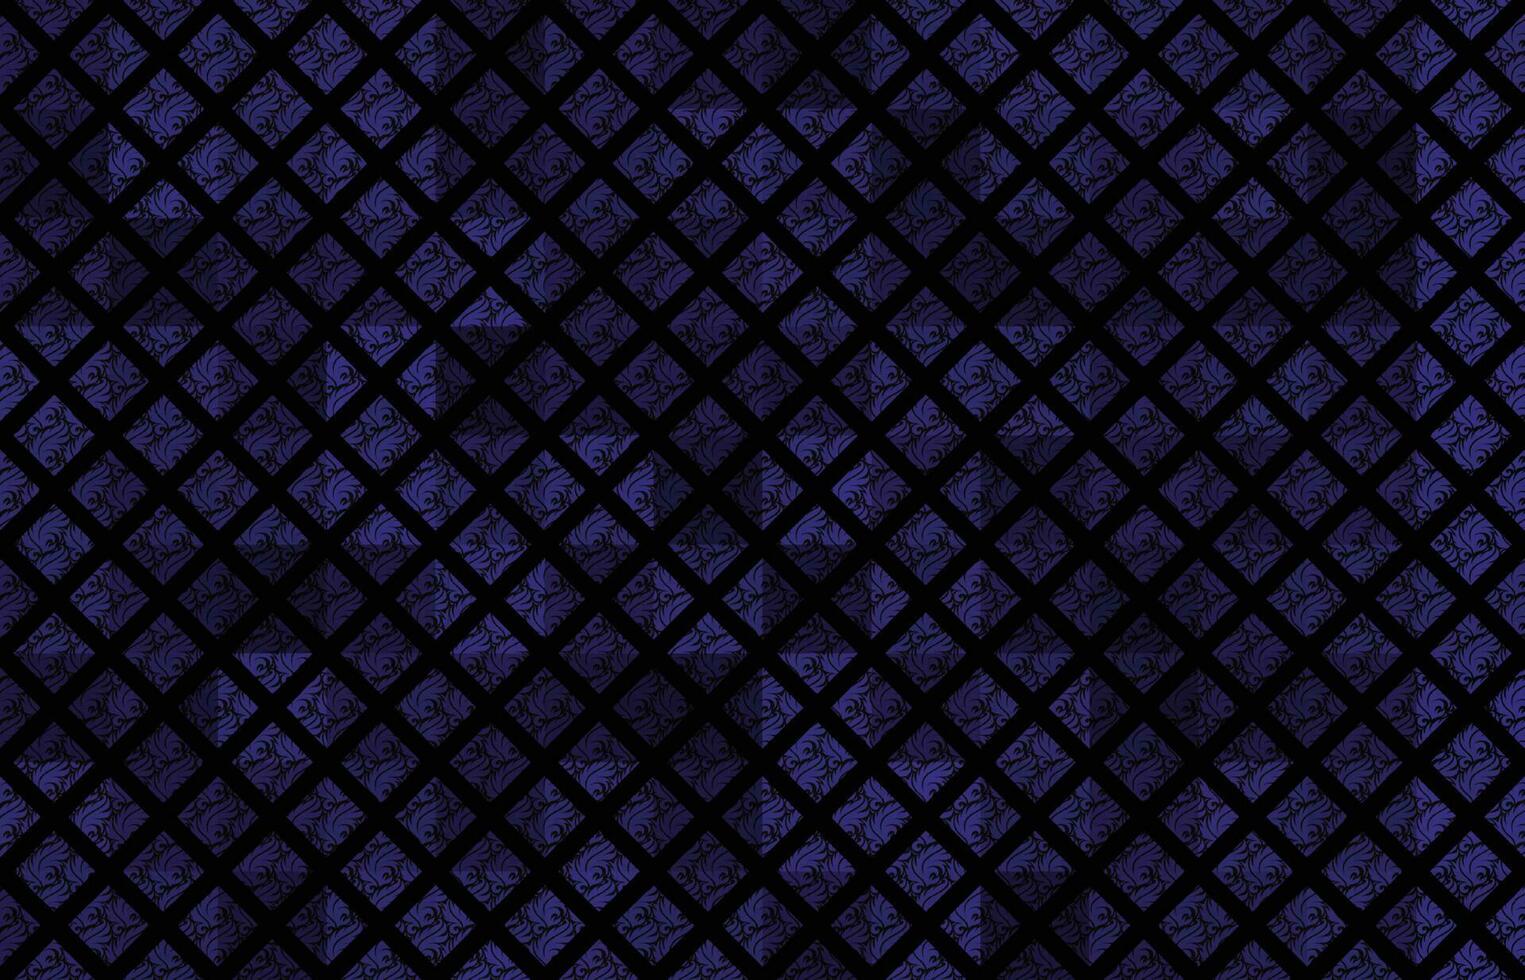 marine blauw met donker grunge stijl meetkundig plein gevulde abstract naadloos patroon voor behang ontwerp, textiel ontwerp, website achtergrond, schrijfbehoeften ontwerp, Product verpakking vector